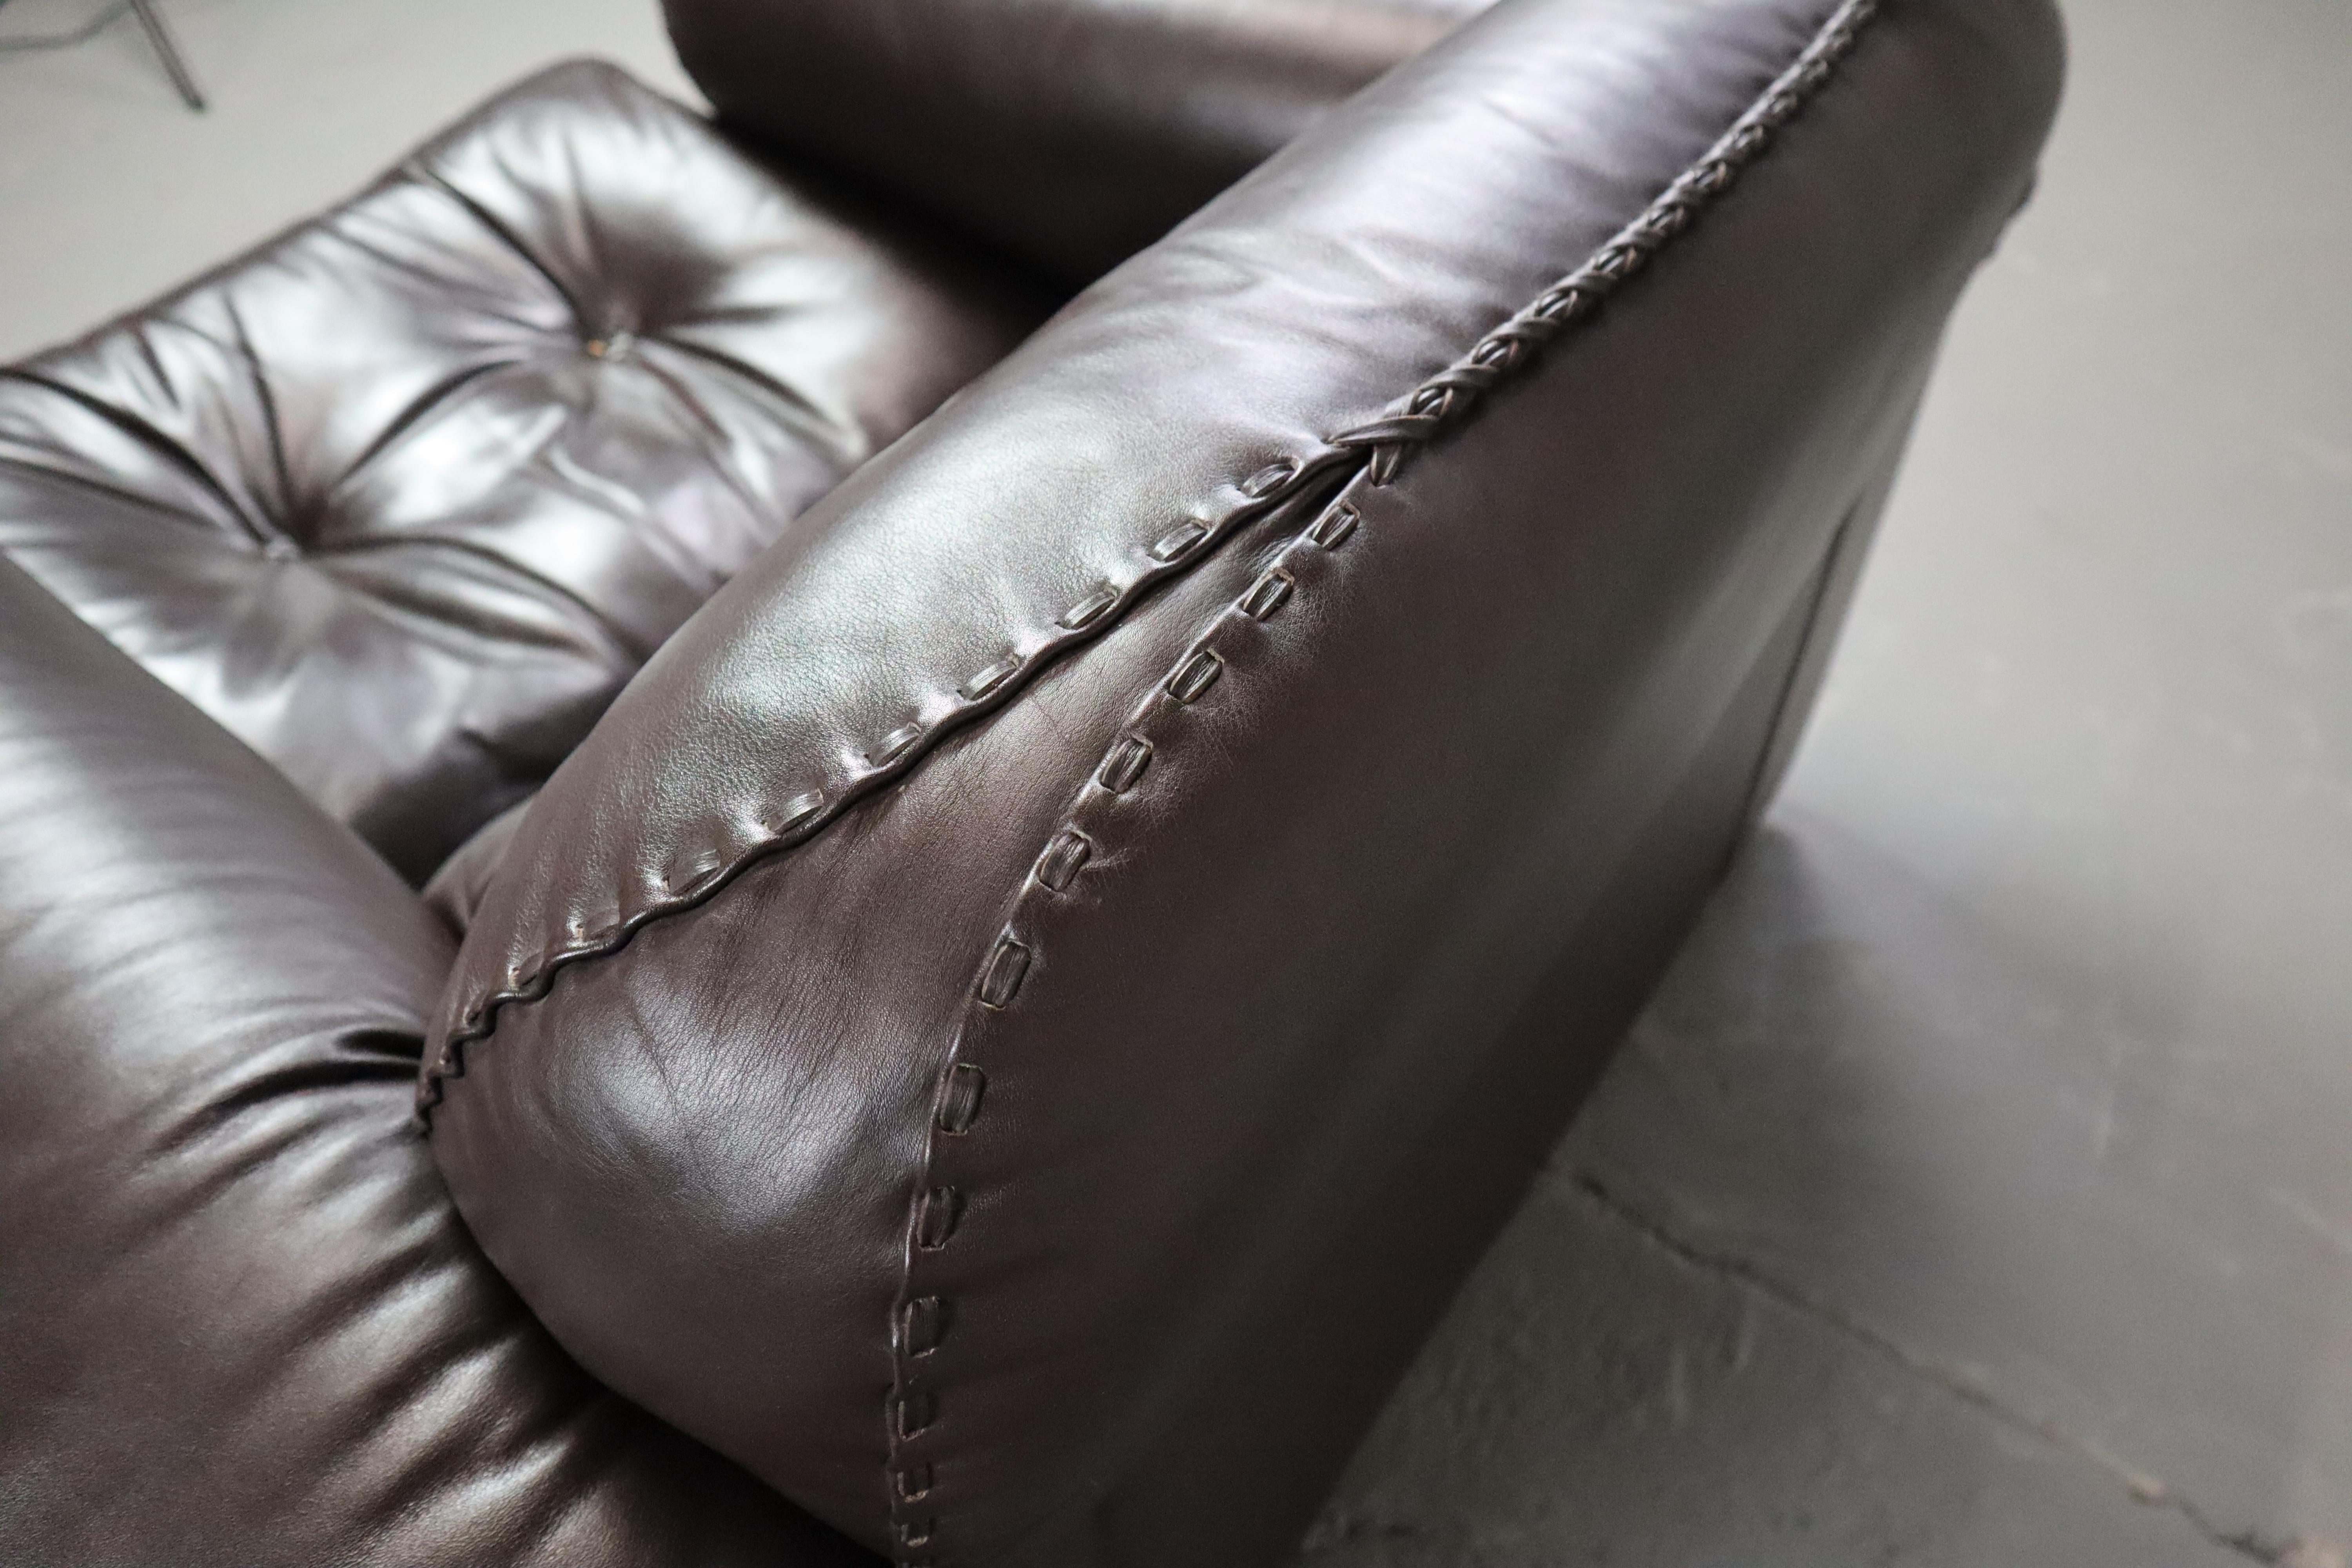 Ein Paar De Sede DS-101 Leder-Loungesessel in ausgezeichnetem Zustand.
Diese Sessel haben ausziehbare Sitze für zusätzlichen Komfort.
Gekennzeichnet mit 